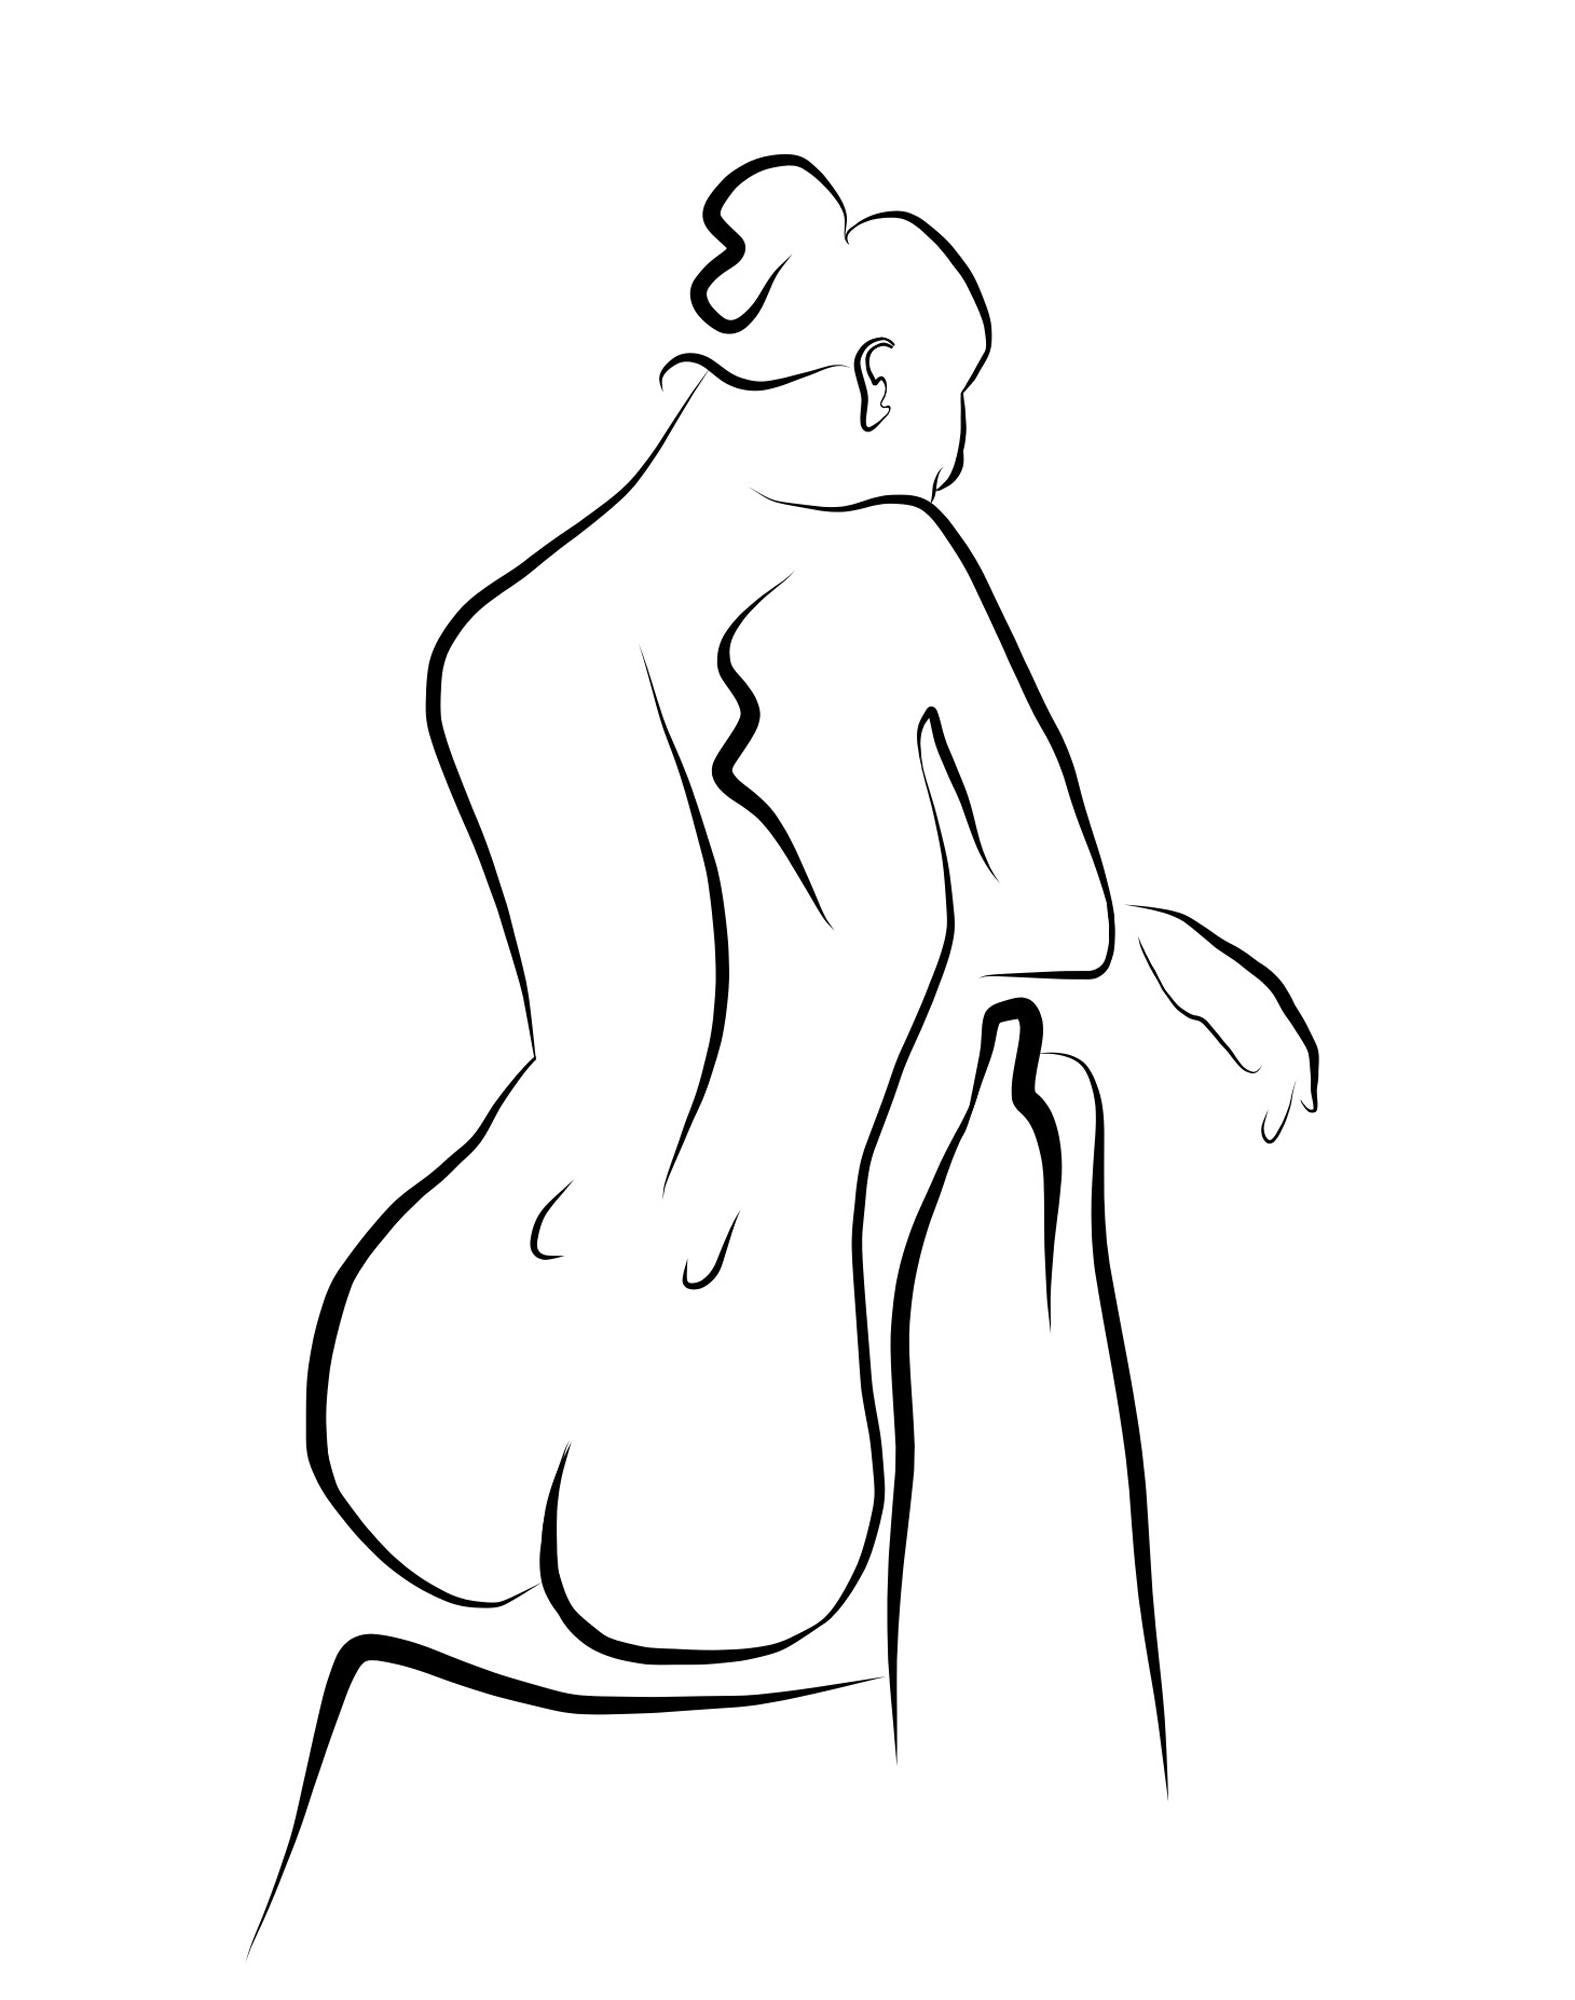 Michael Binkley Nude Print – Haiku #57 - Digital Vector Drawing Seated Female Nude From Rear